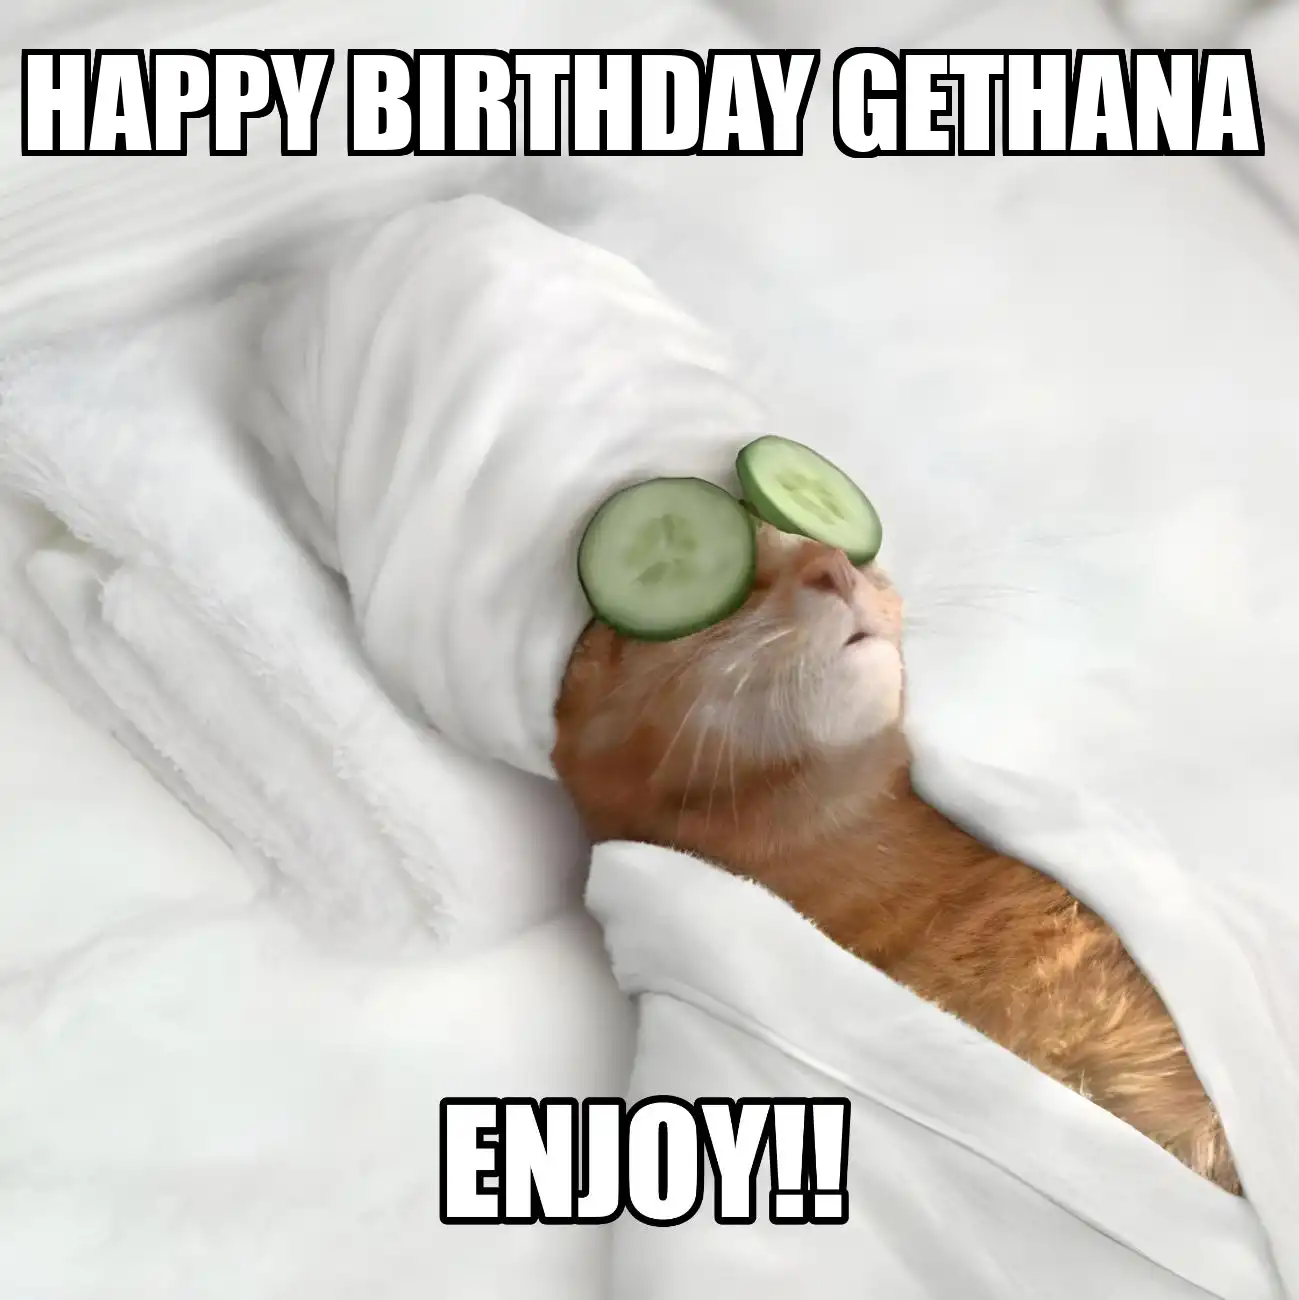 Happy Birthday Gethana Enjoy Cat Meme